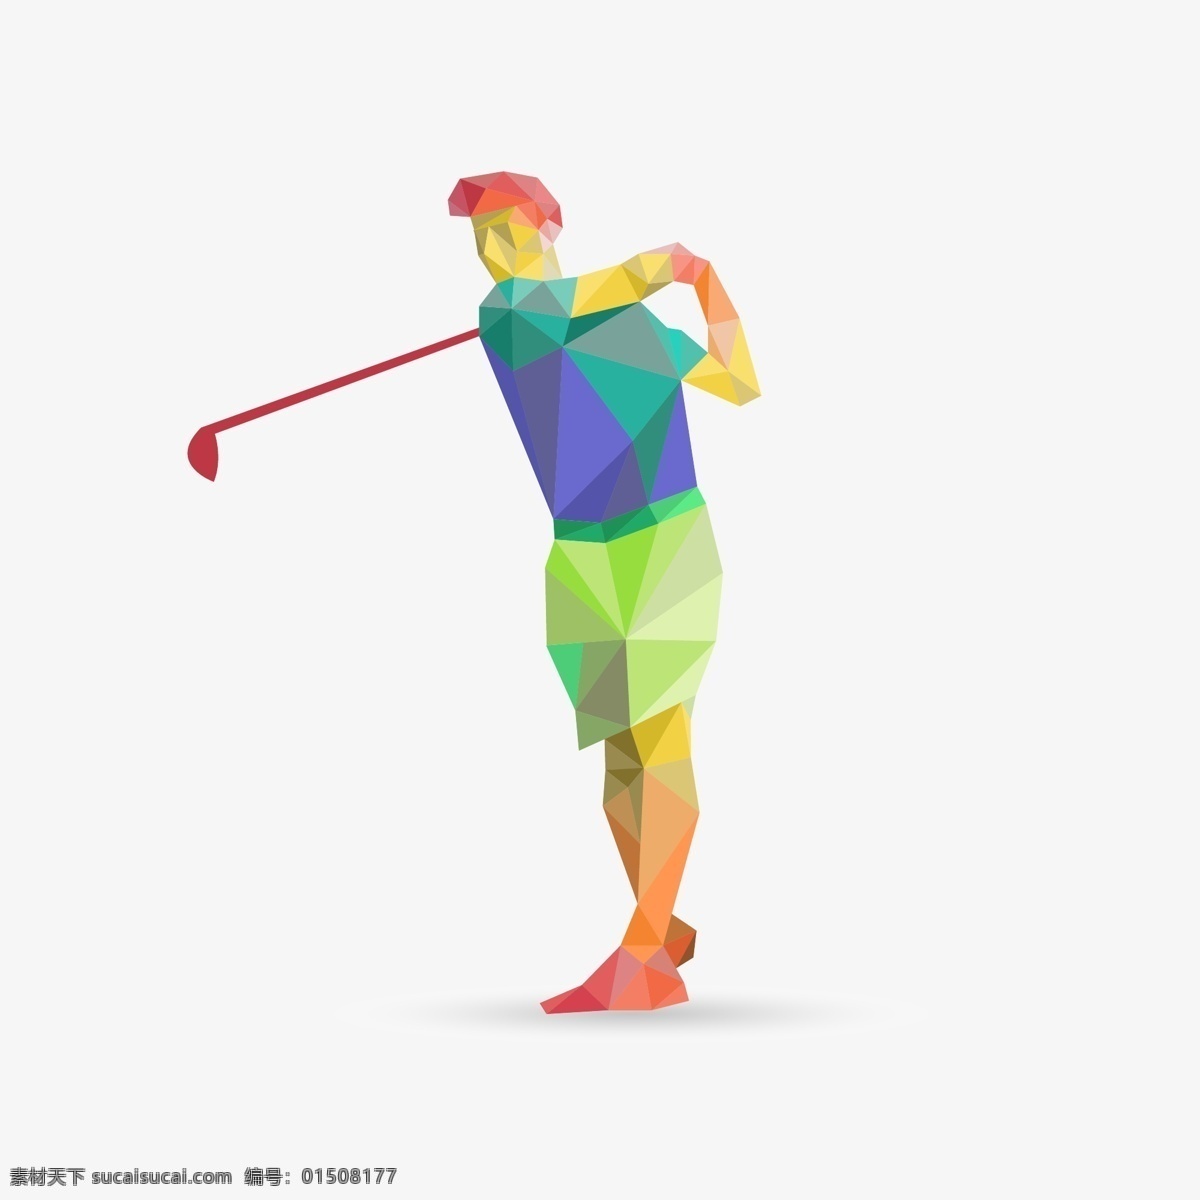 高尔夫球 高尔夫运动 矢量高尔夫 小白球 户外体育运动 高尔夫球杆 高尔夫球场 运动健身 球动 打高尔夫 卡通高尔夫球 卡通设计